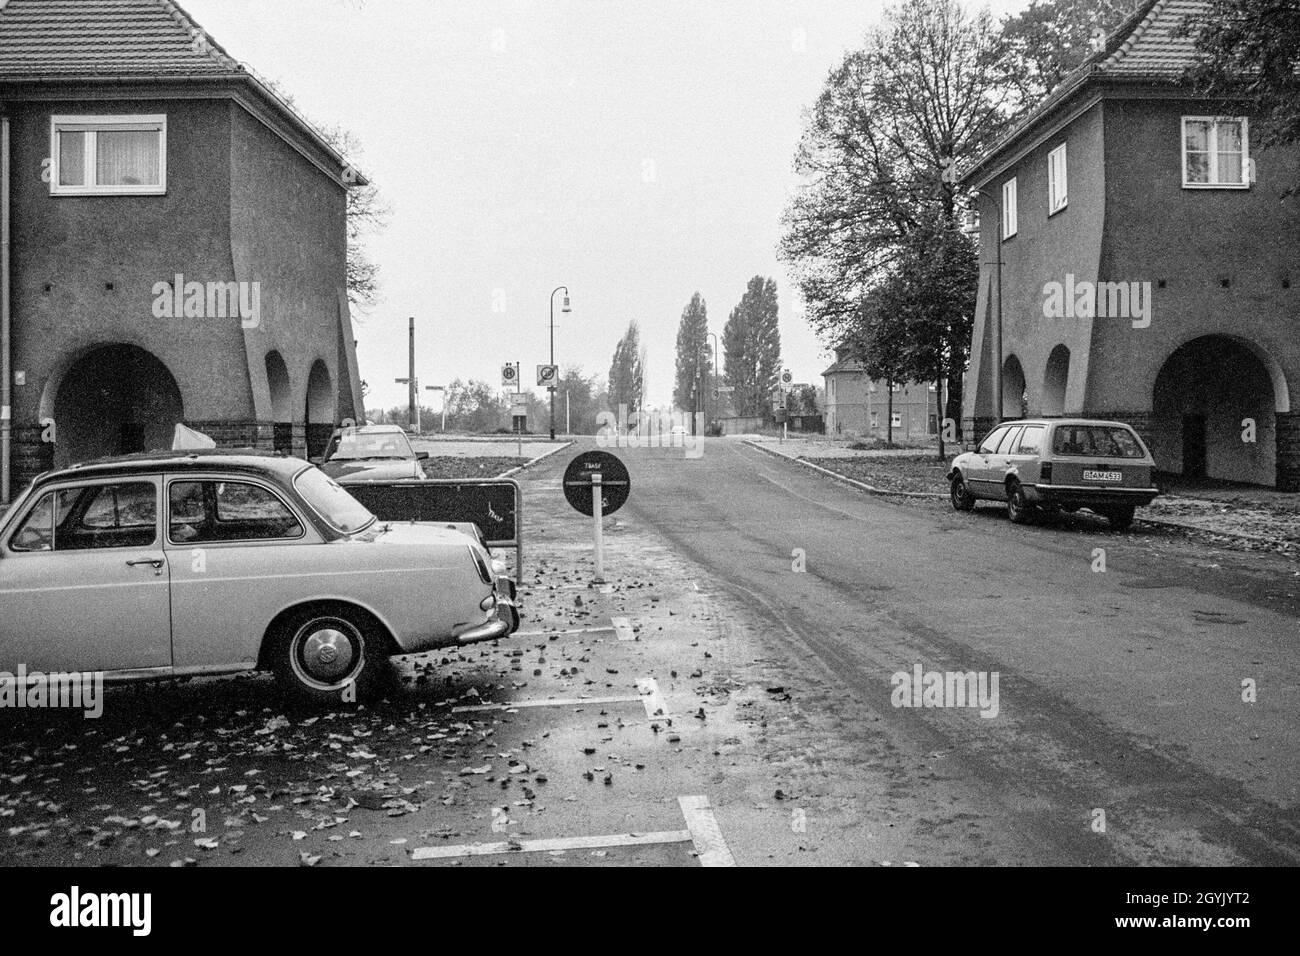 Torweg, Staaken, looking towards the former border between East and West Berlin in 1992 Stock Photo